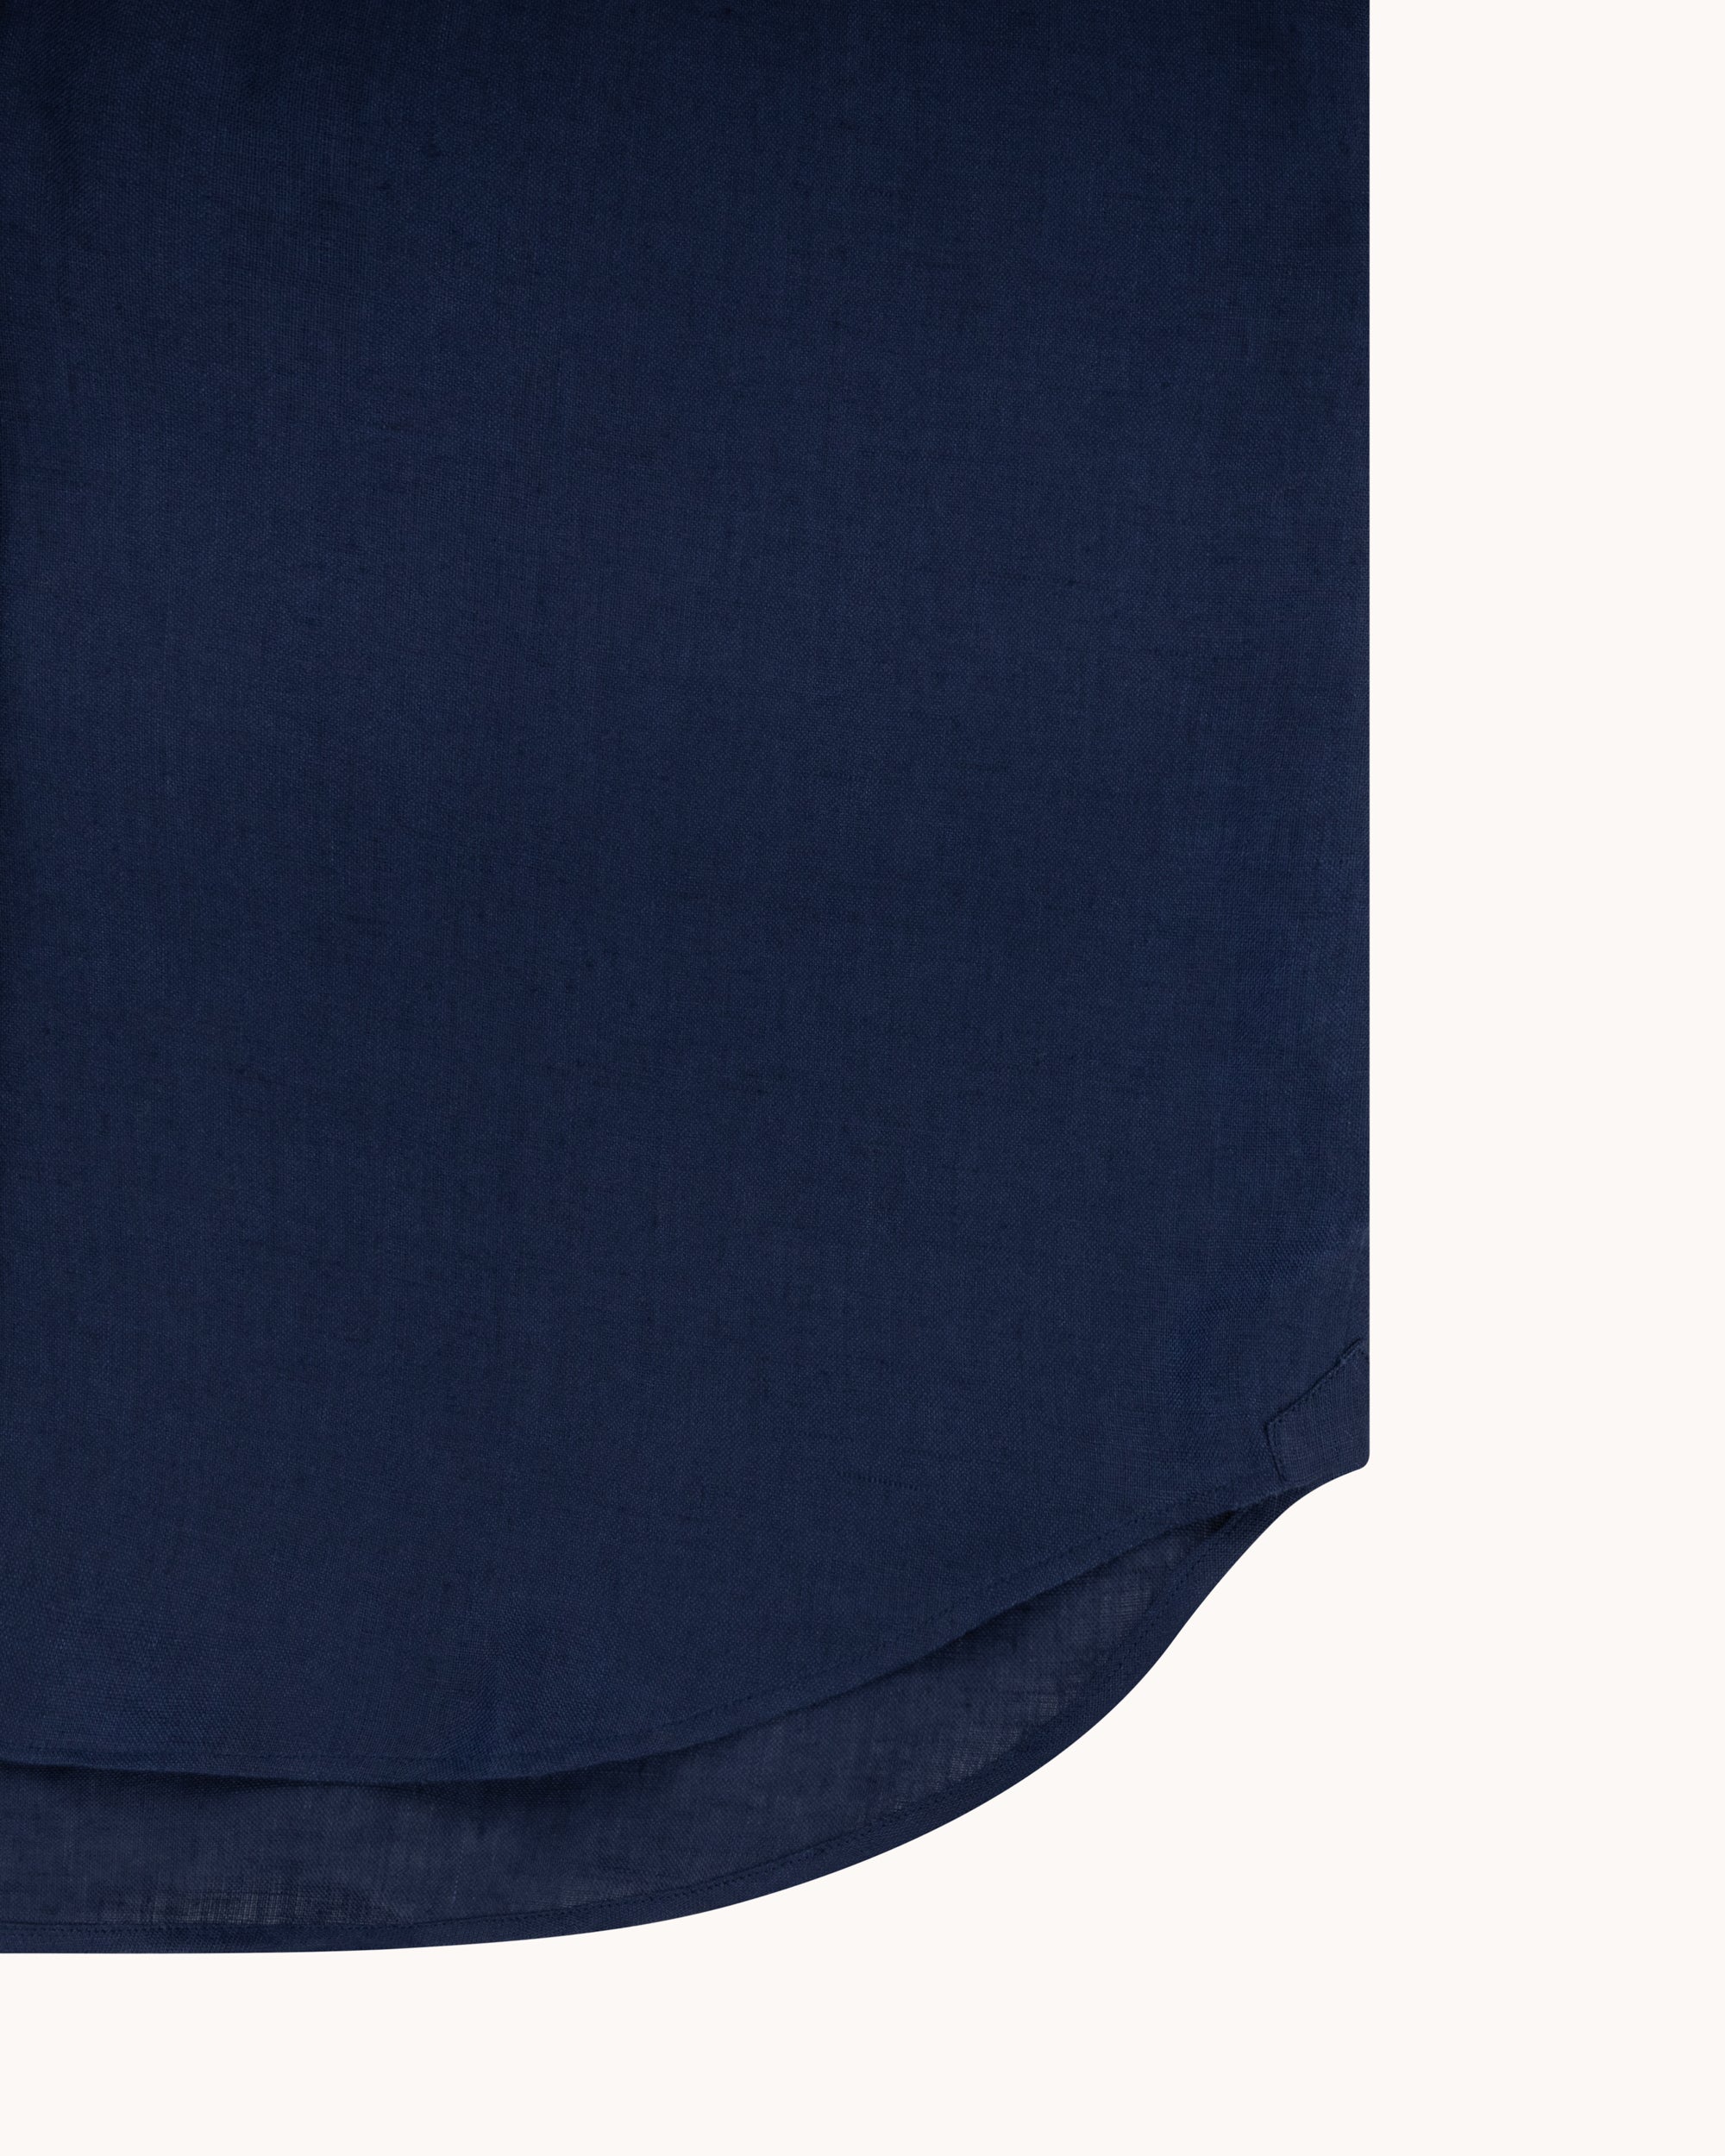 Button Down Collar Shirt - Navy Linen